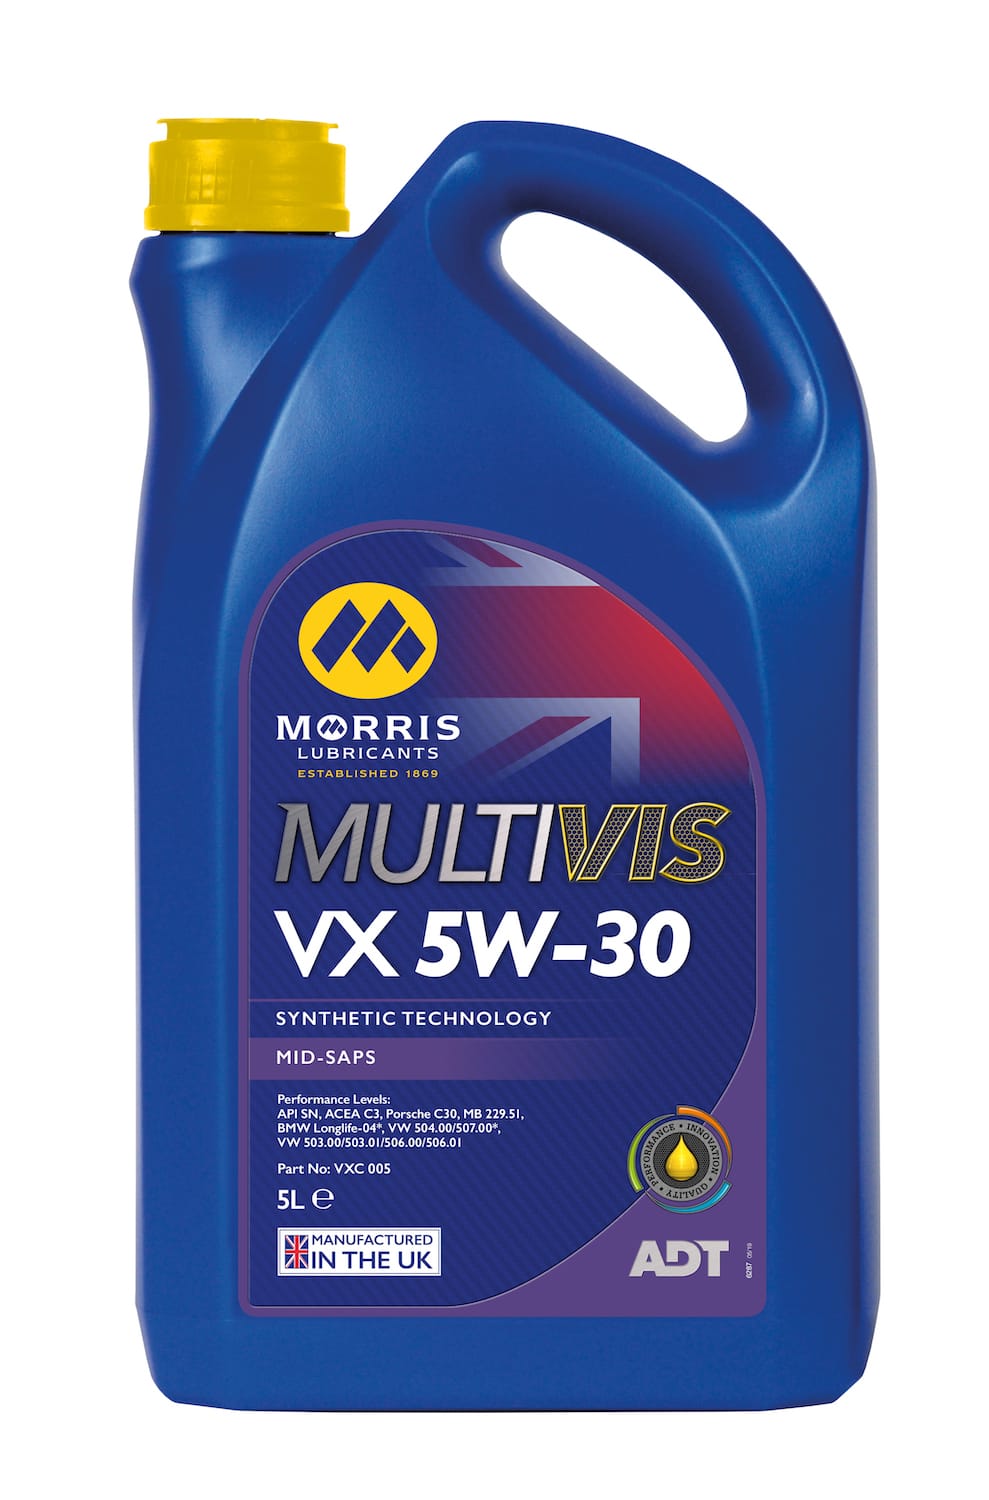 Multivis ADT VX 5W-30 